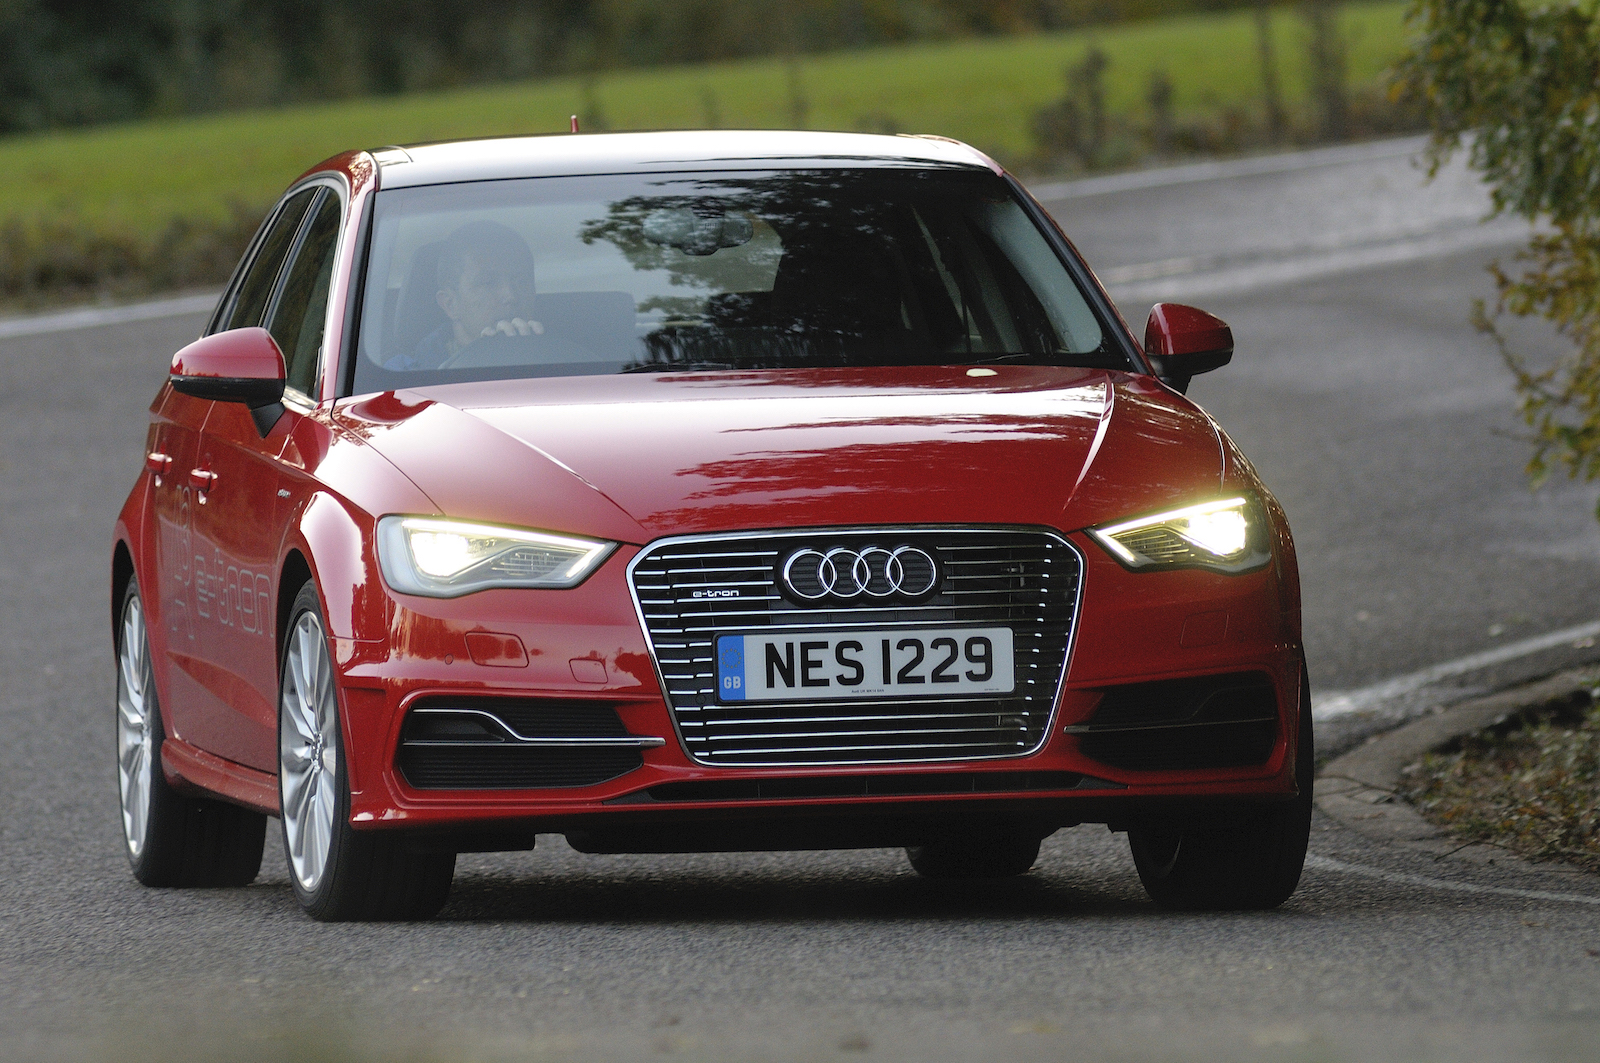 synoniemenlijst beeld Ga door Used Audi A3 e-tron buying guide | DrivingElectric